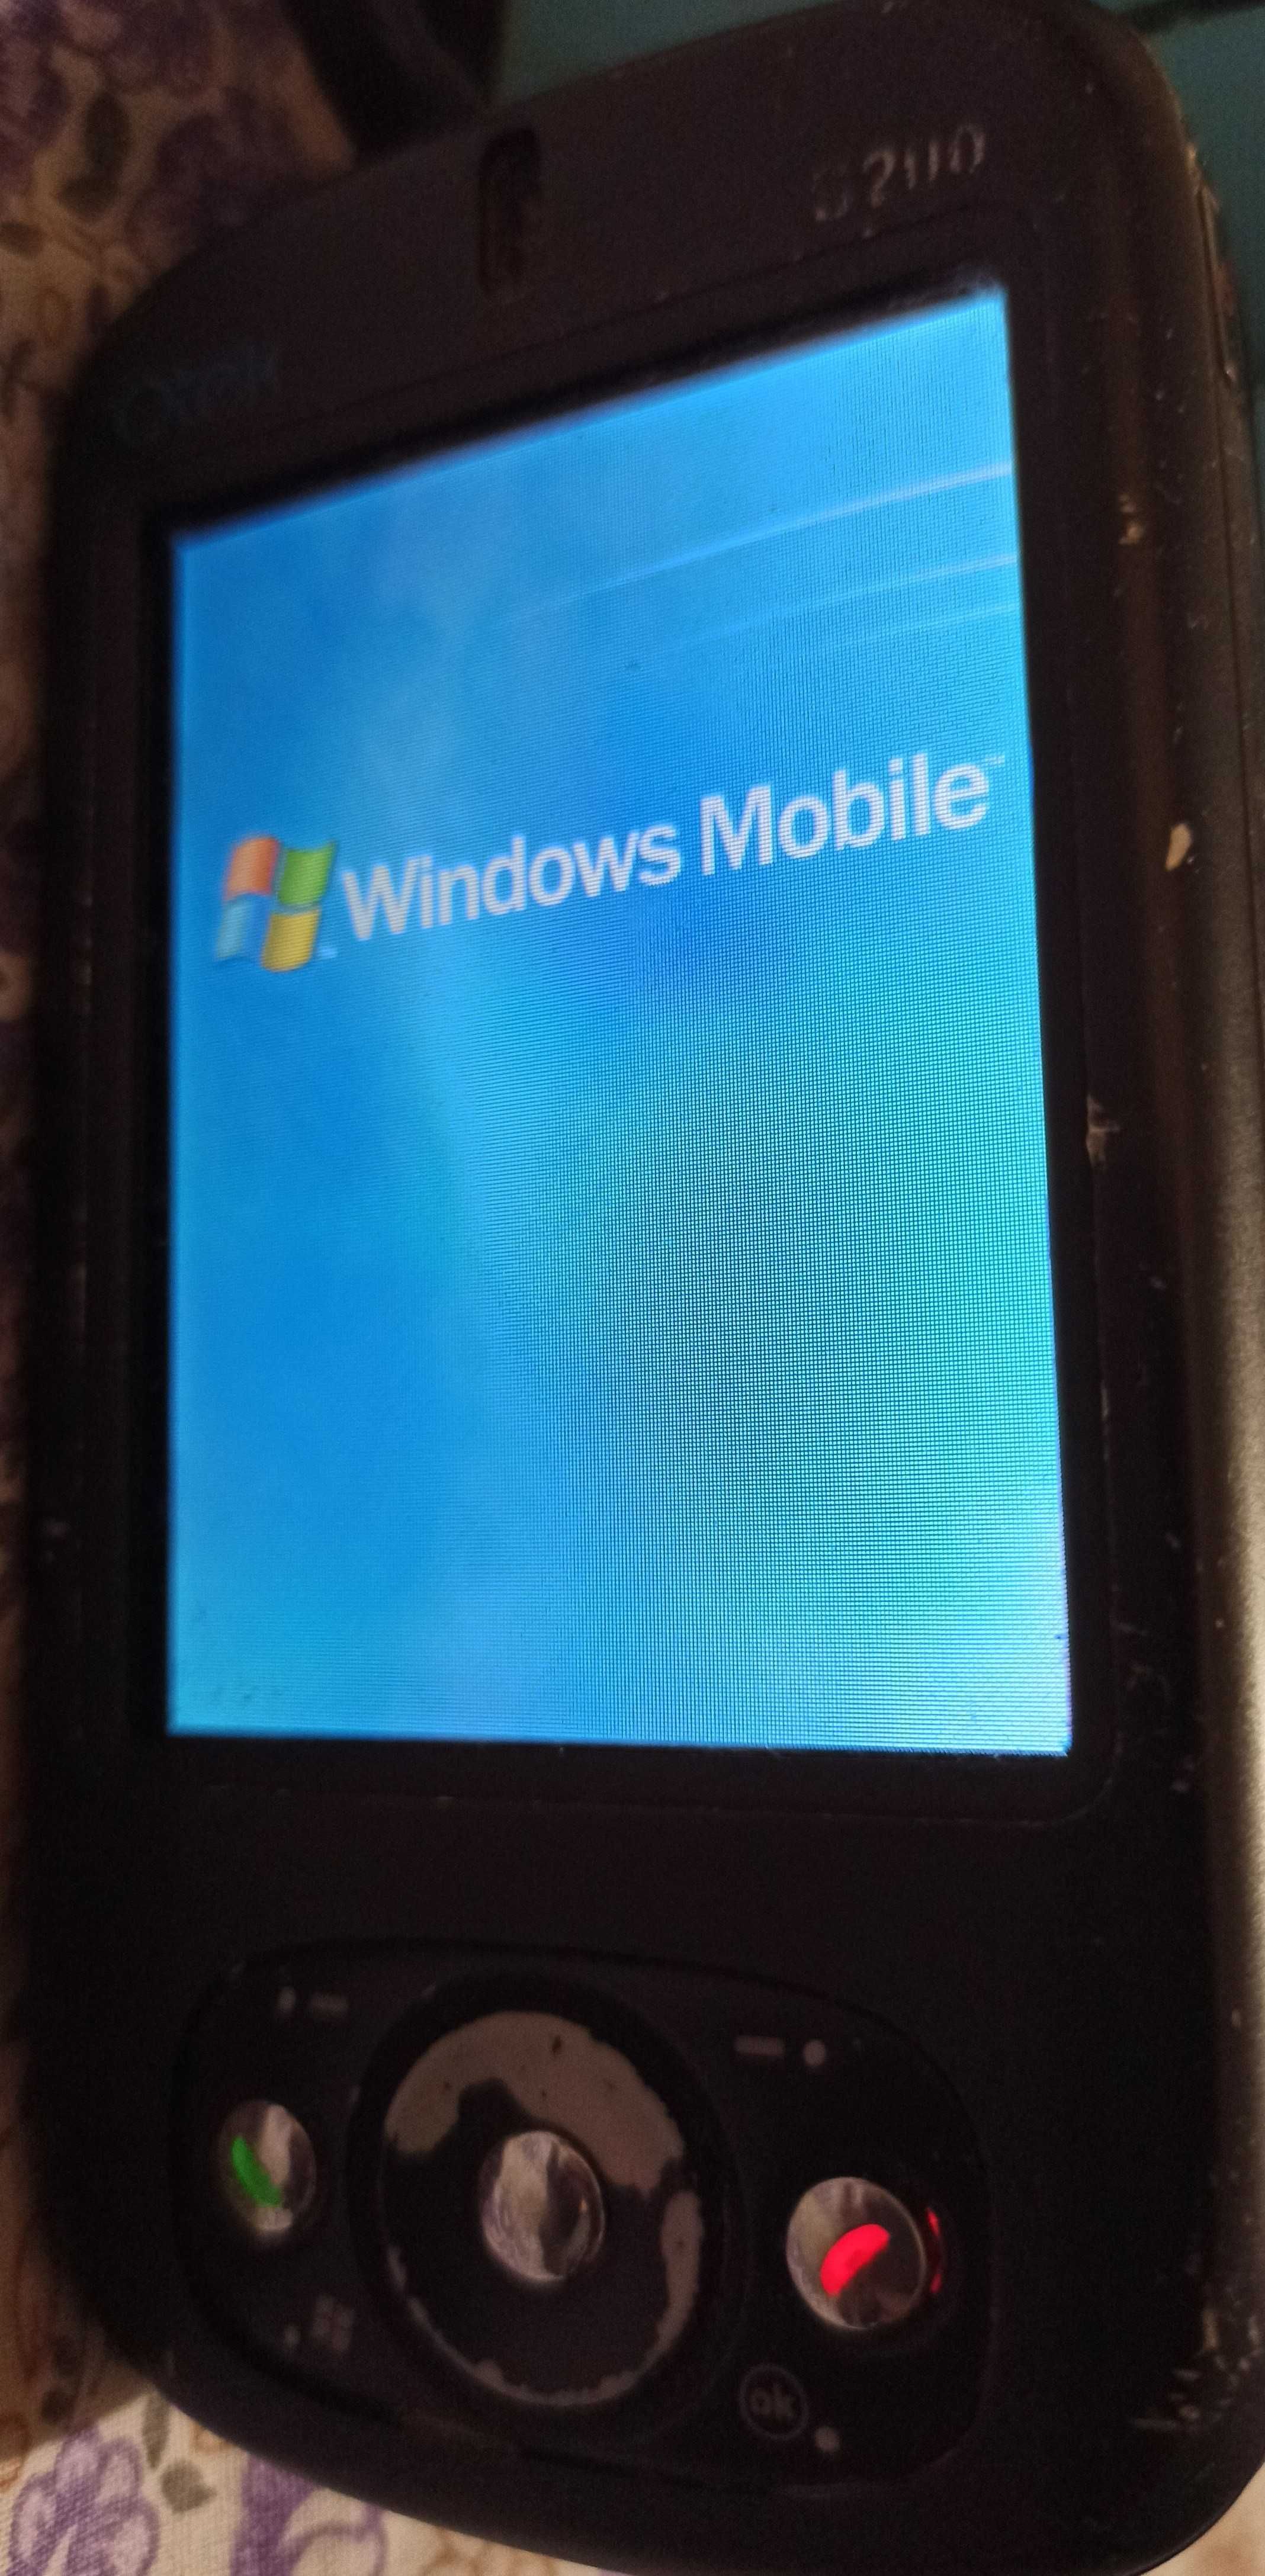 Смартфон Qtek S200 на Windows Mobile Pocket под ремонт или запчасти